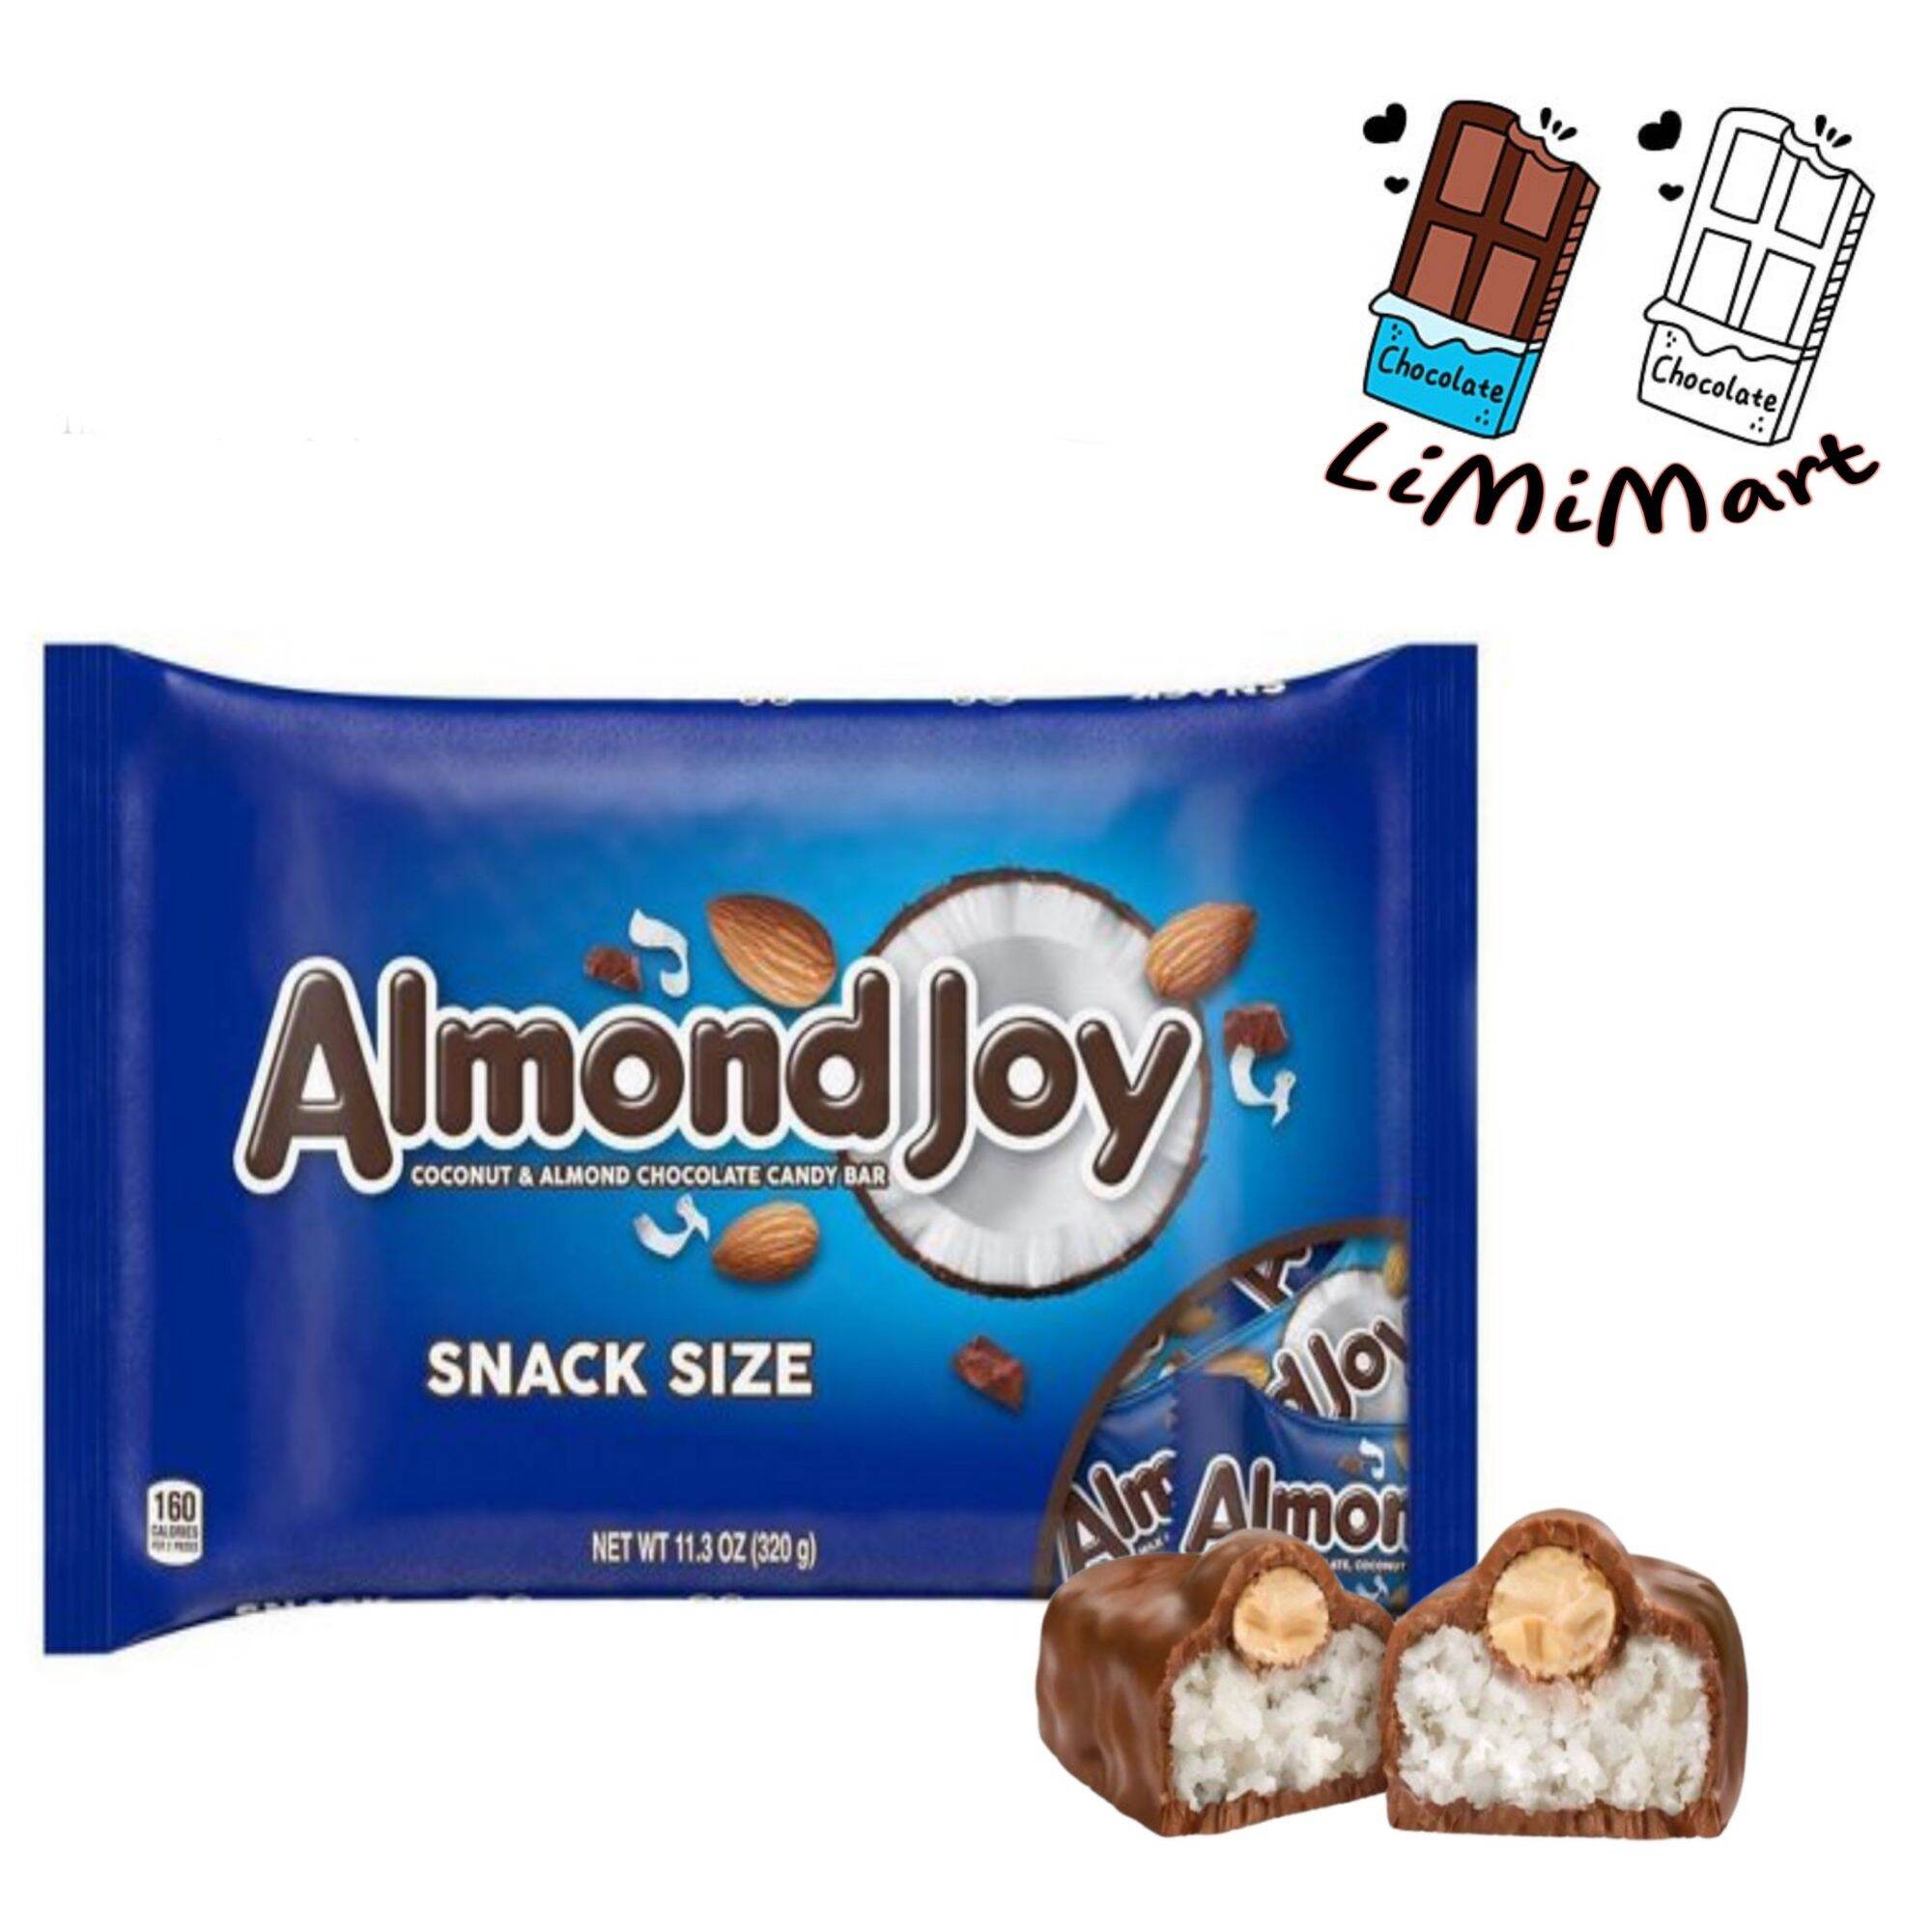 Socola mỹ dừa nhân hạnh nhân hershey s almond joy túi 320g - ảnh sản phẩm 1